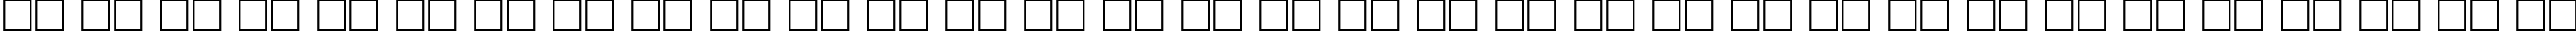 Пример написания русского алфавита шрифтом Luxor